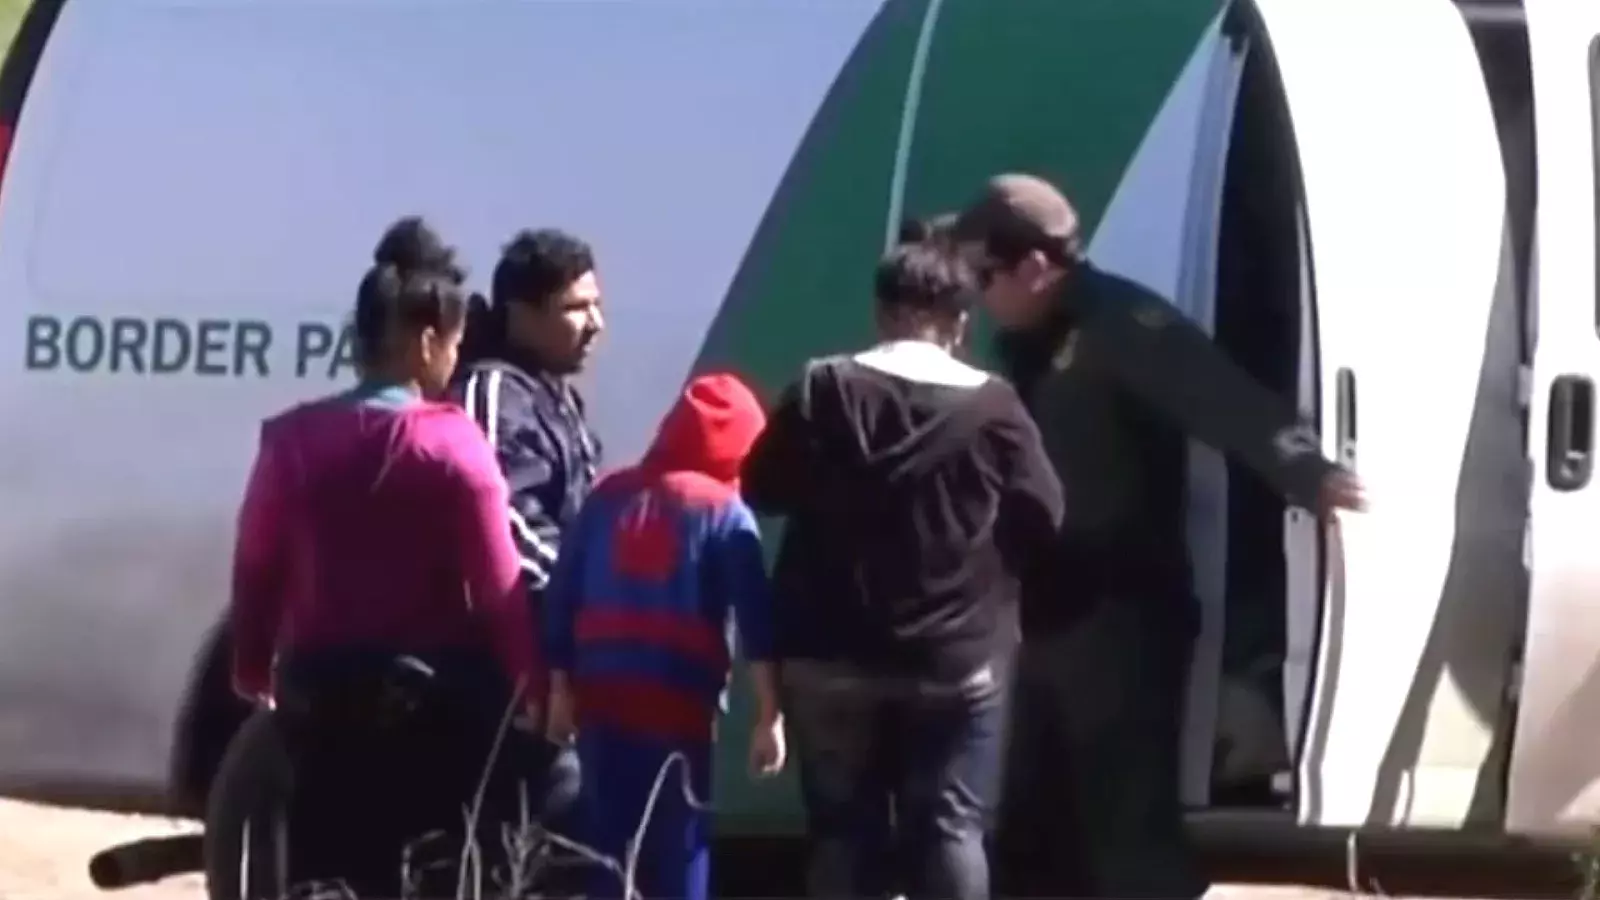 Inmigrantes detenidos en frontera